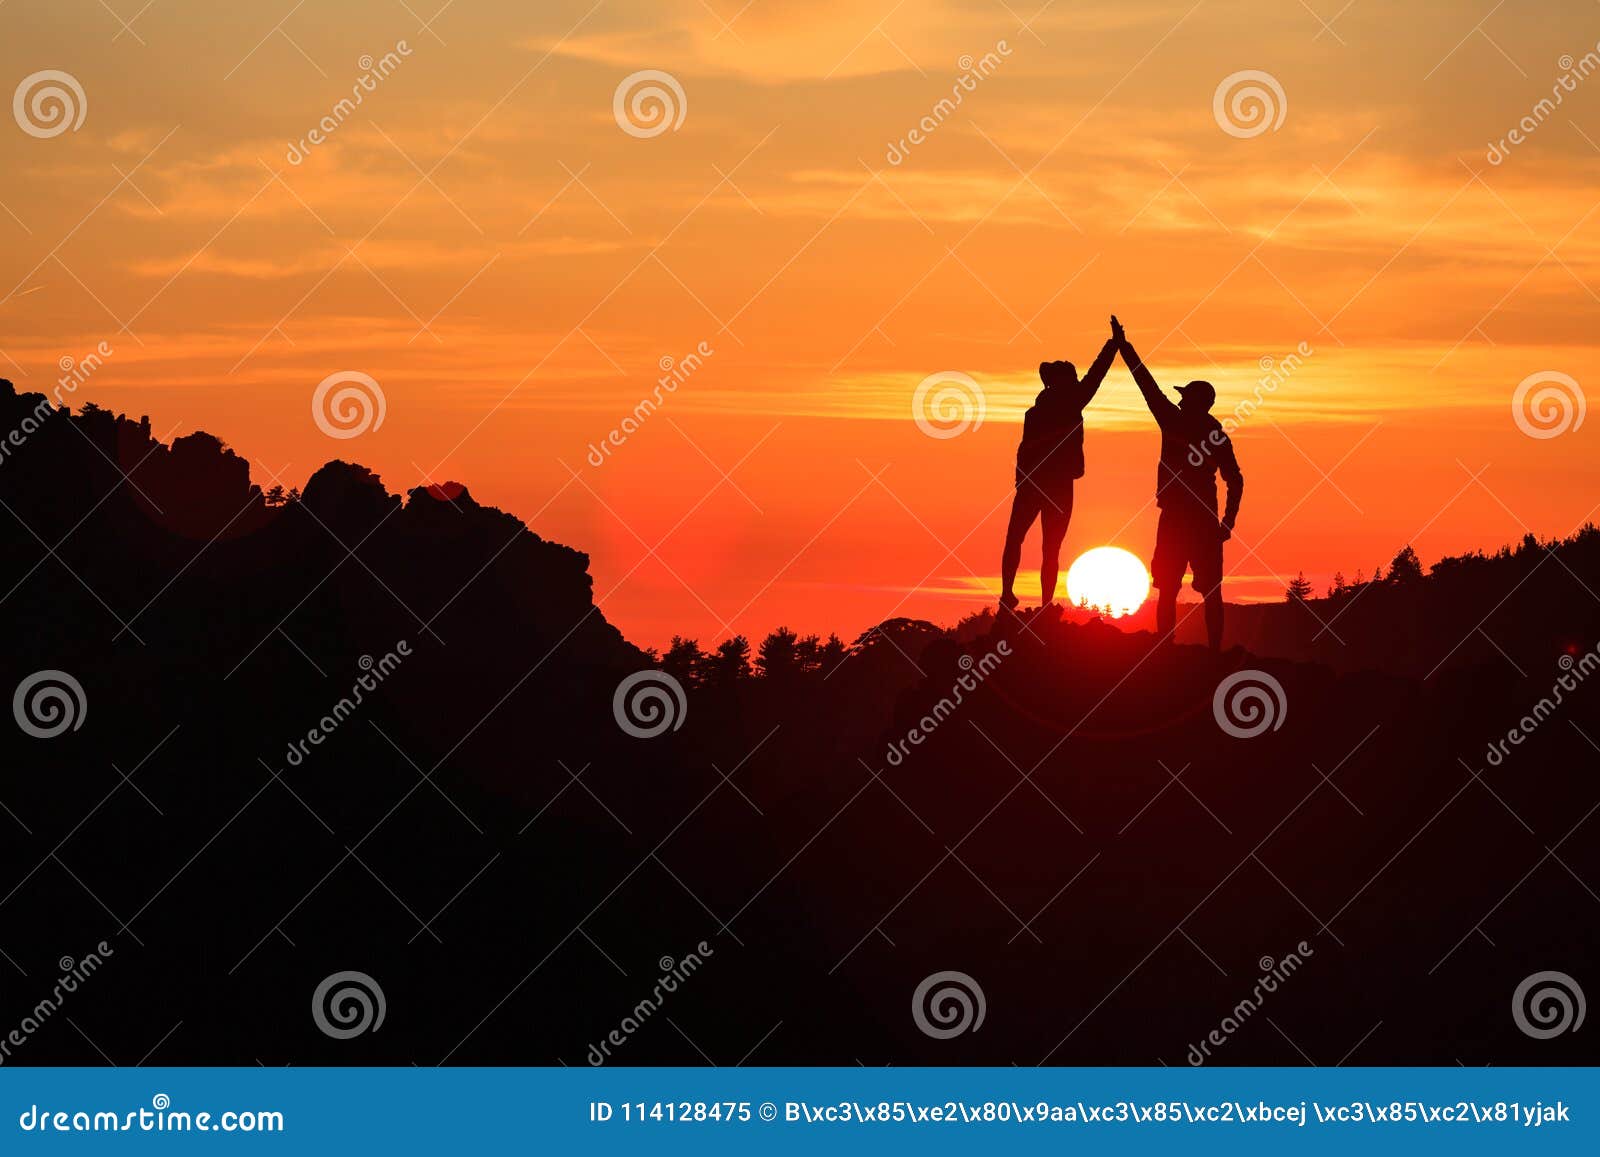 teamwork couple celebrating in inspiring mountains sunset